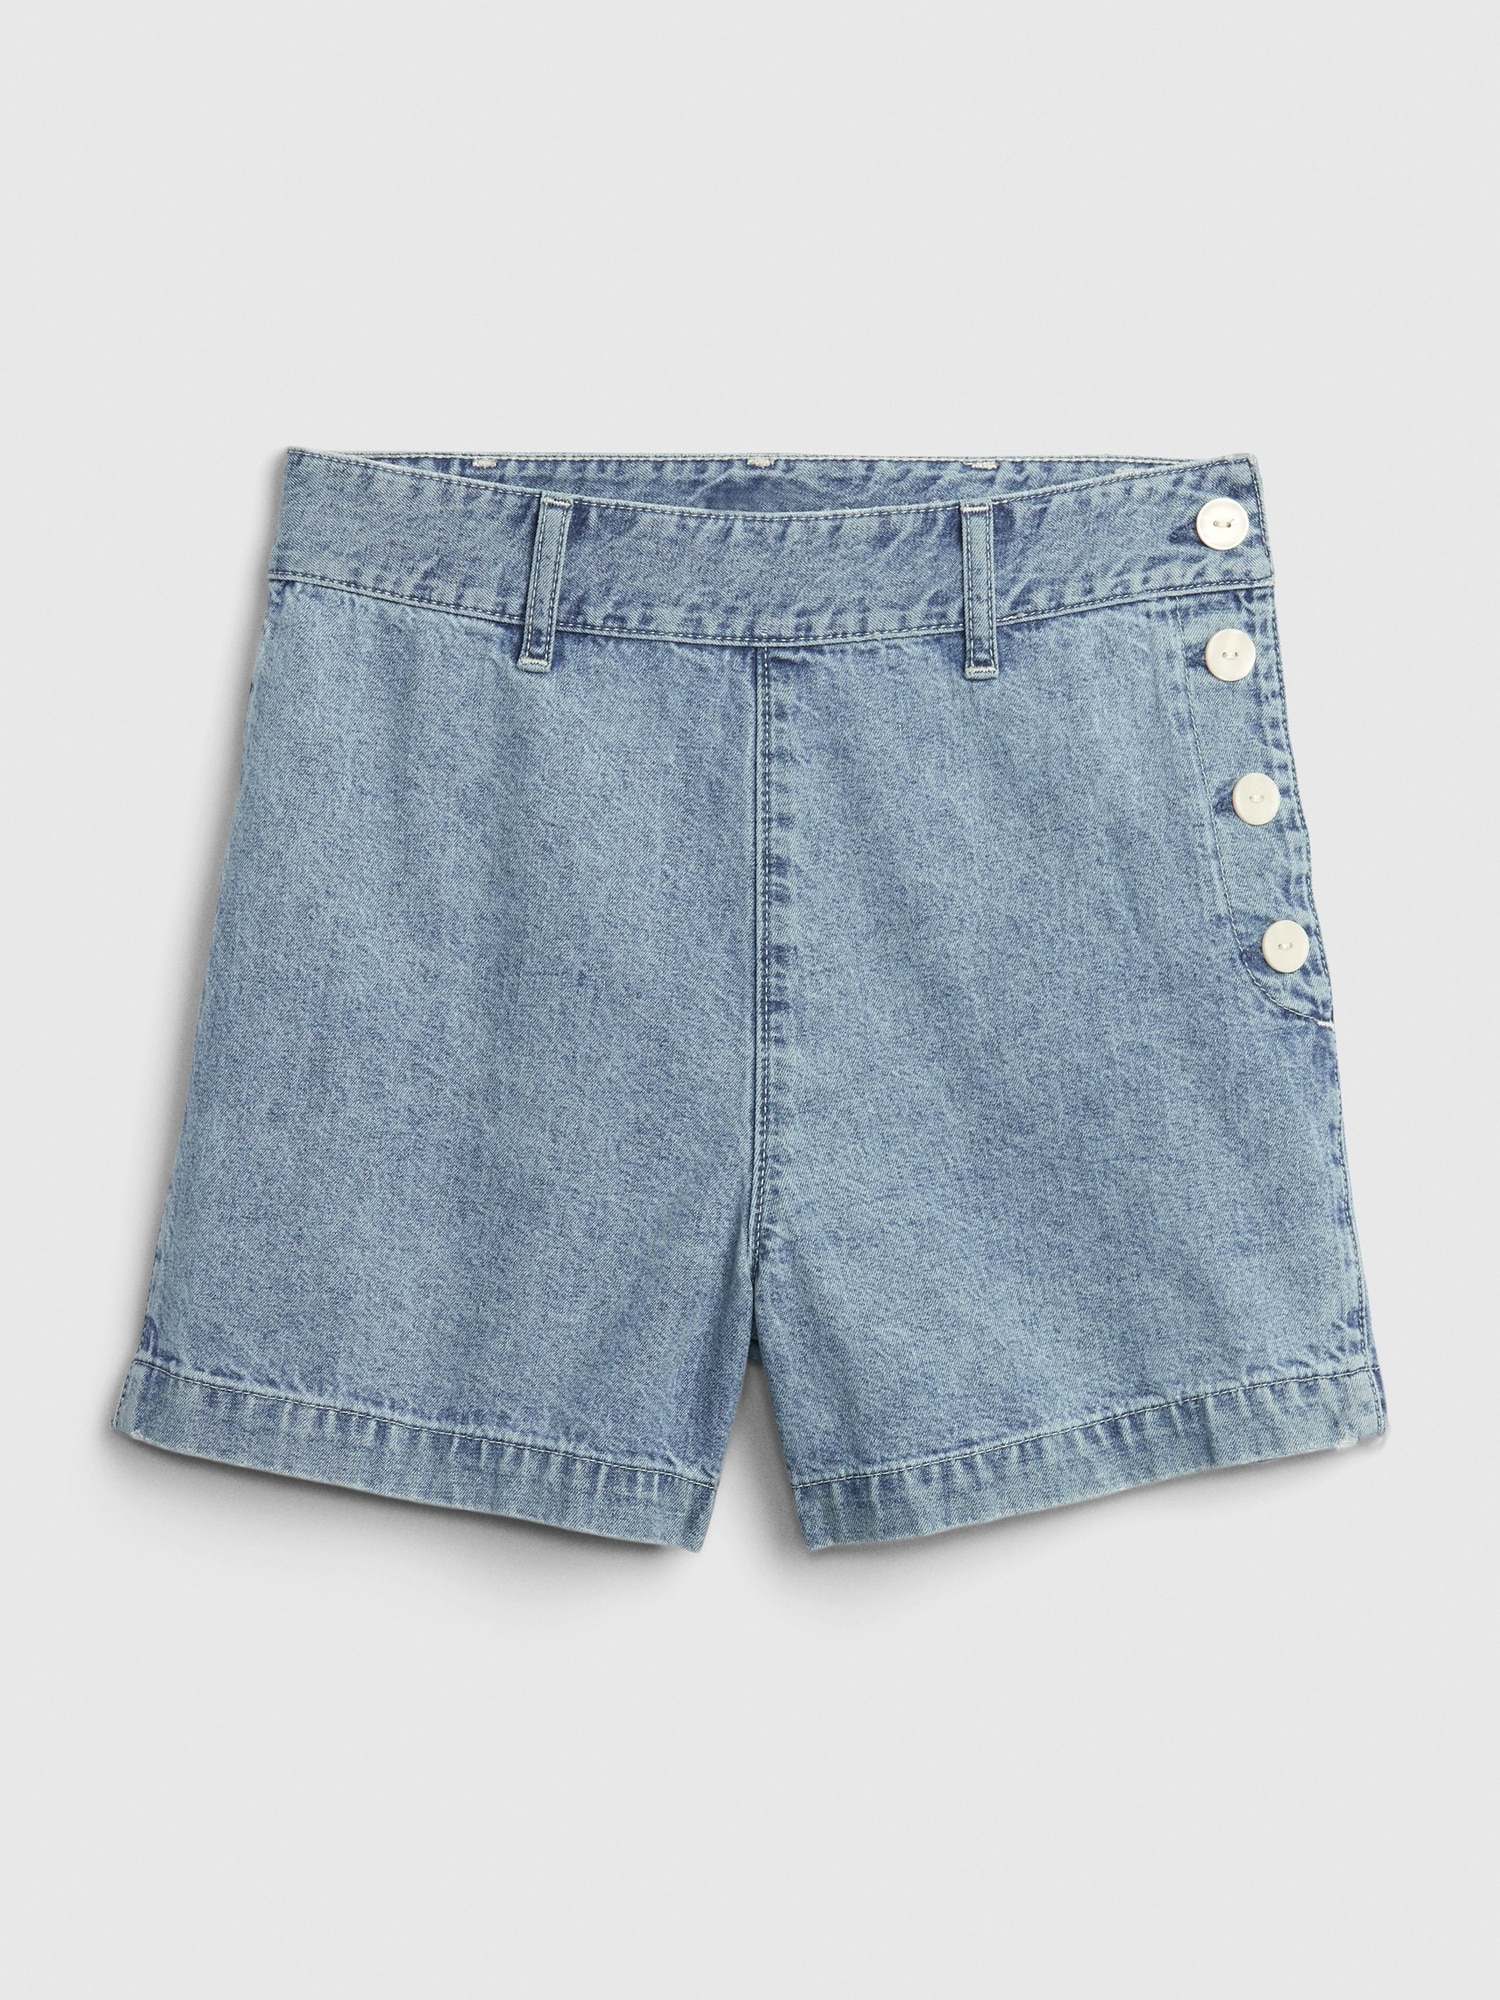 gap jean shorts